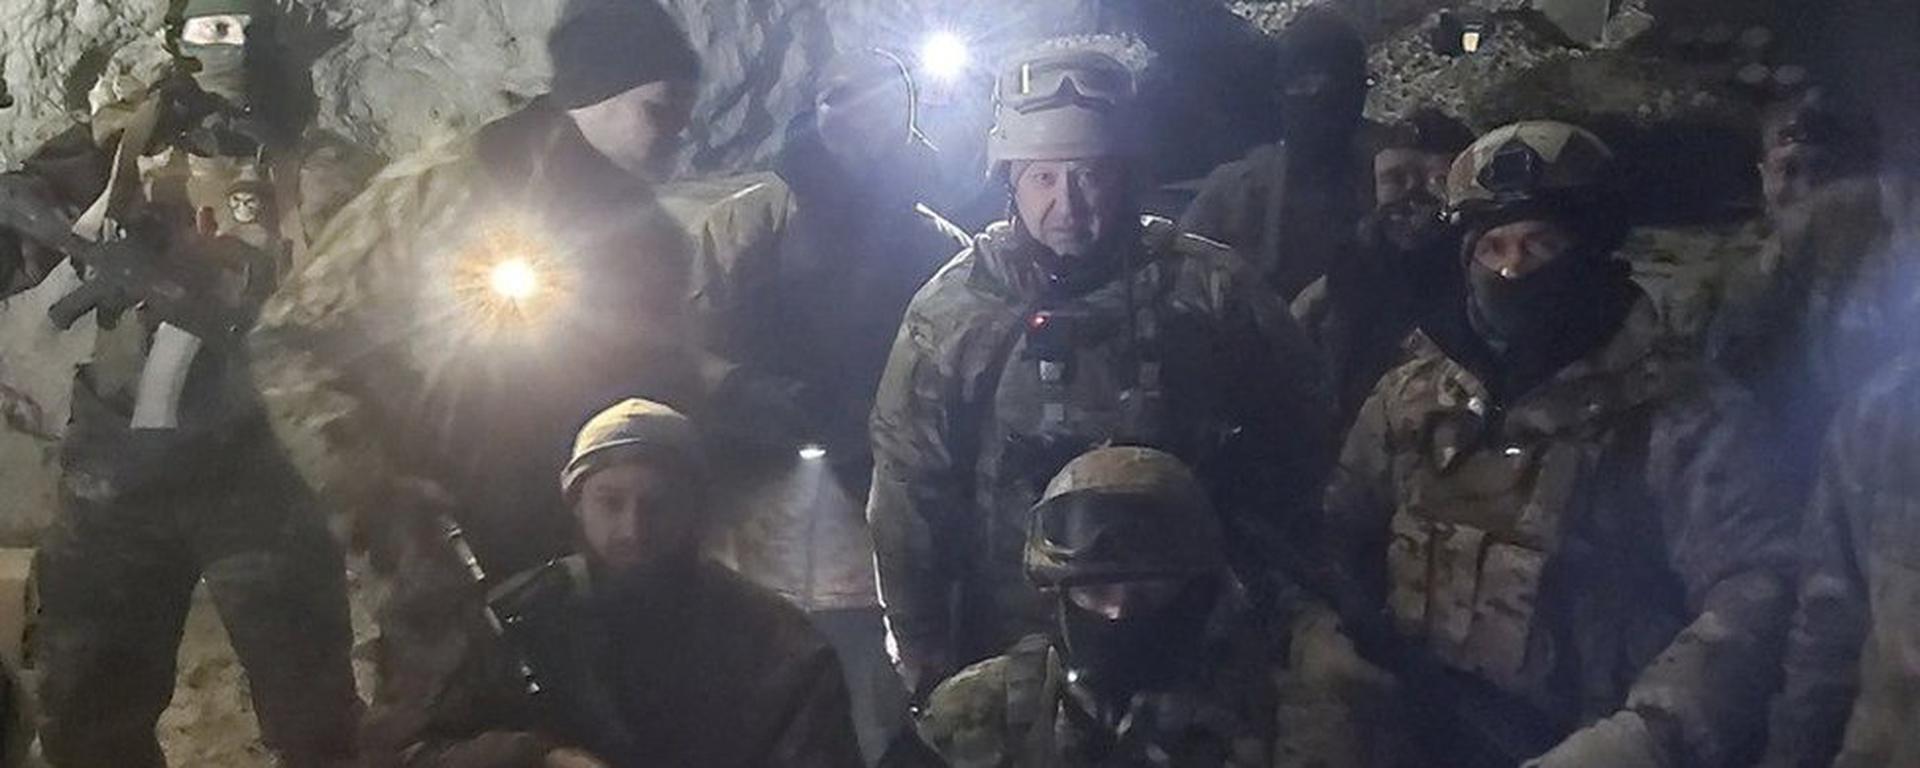 Grupo Wagner: Cómo sus mercenarios avanzan en Ucrania (y qué riesgos corre Putin por recurrir a ellos)